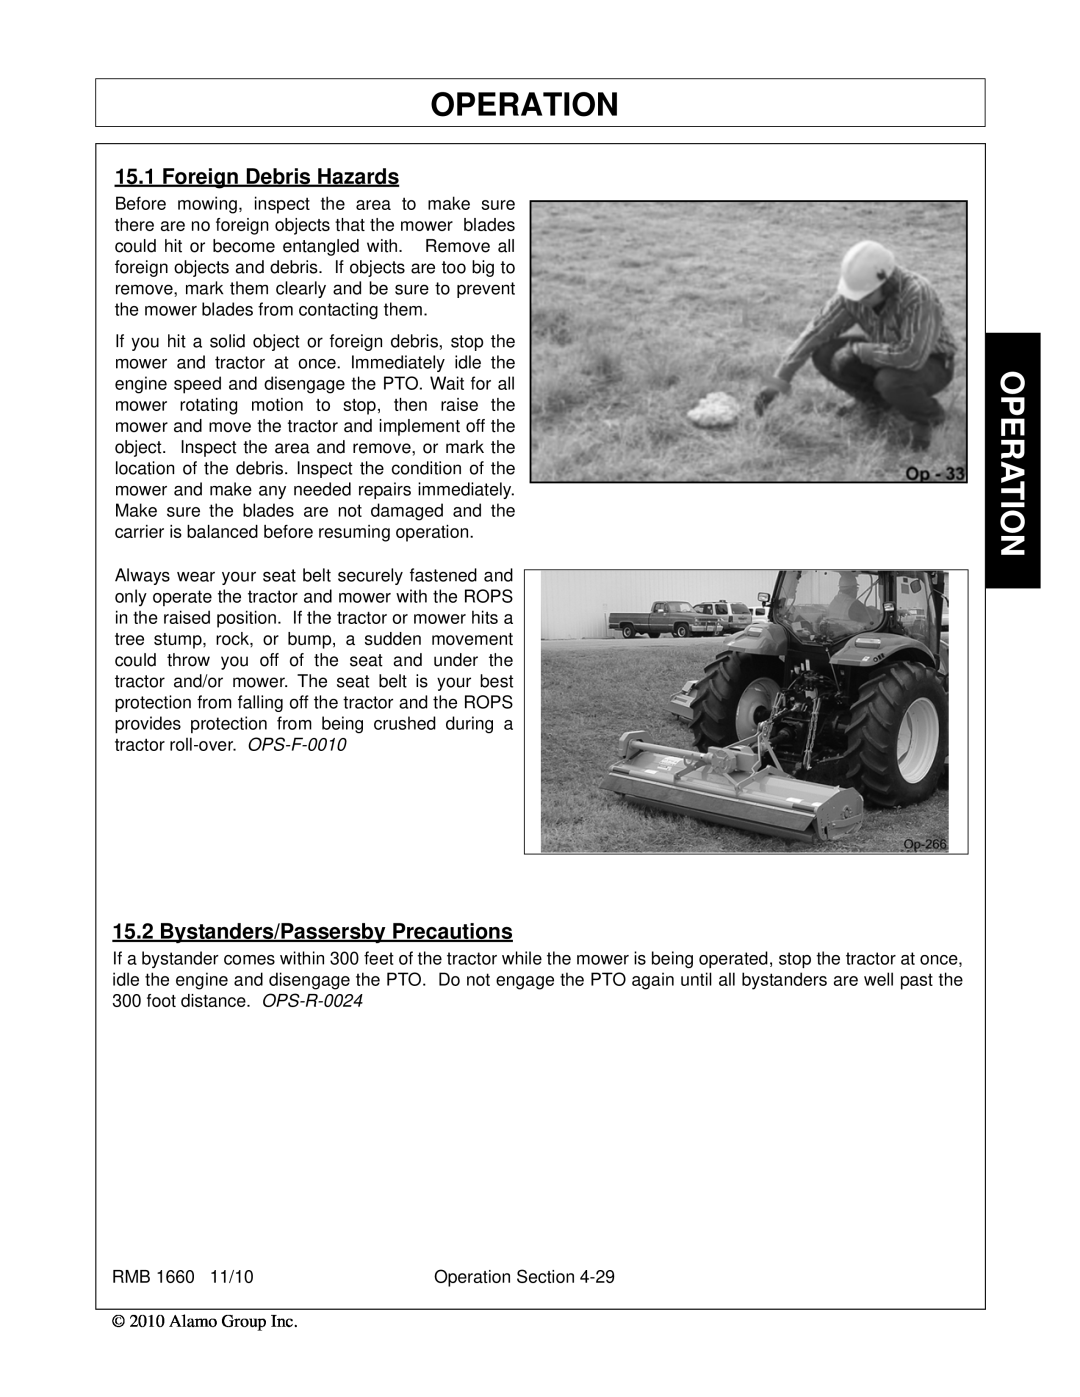 Bush Hog RMB 1660 manual Operation, Foreign Debris Hazards, Bystanders/Passersby Precautions 